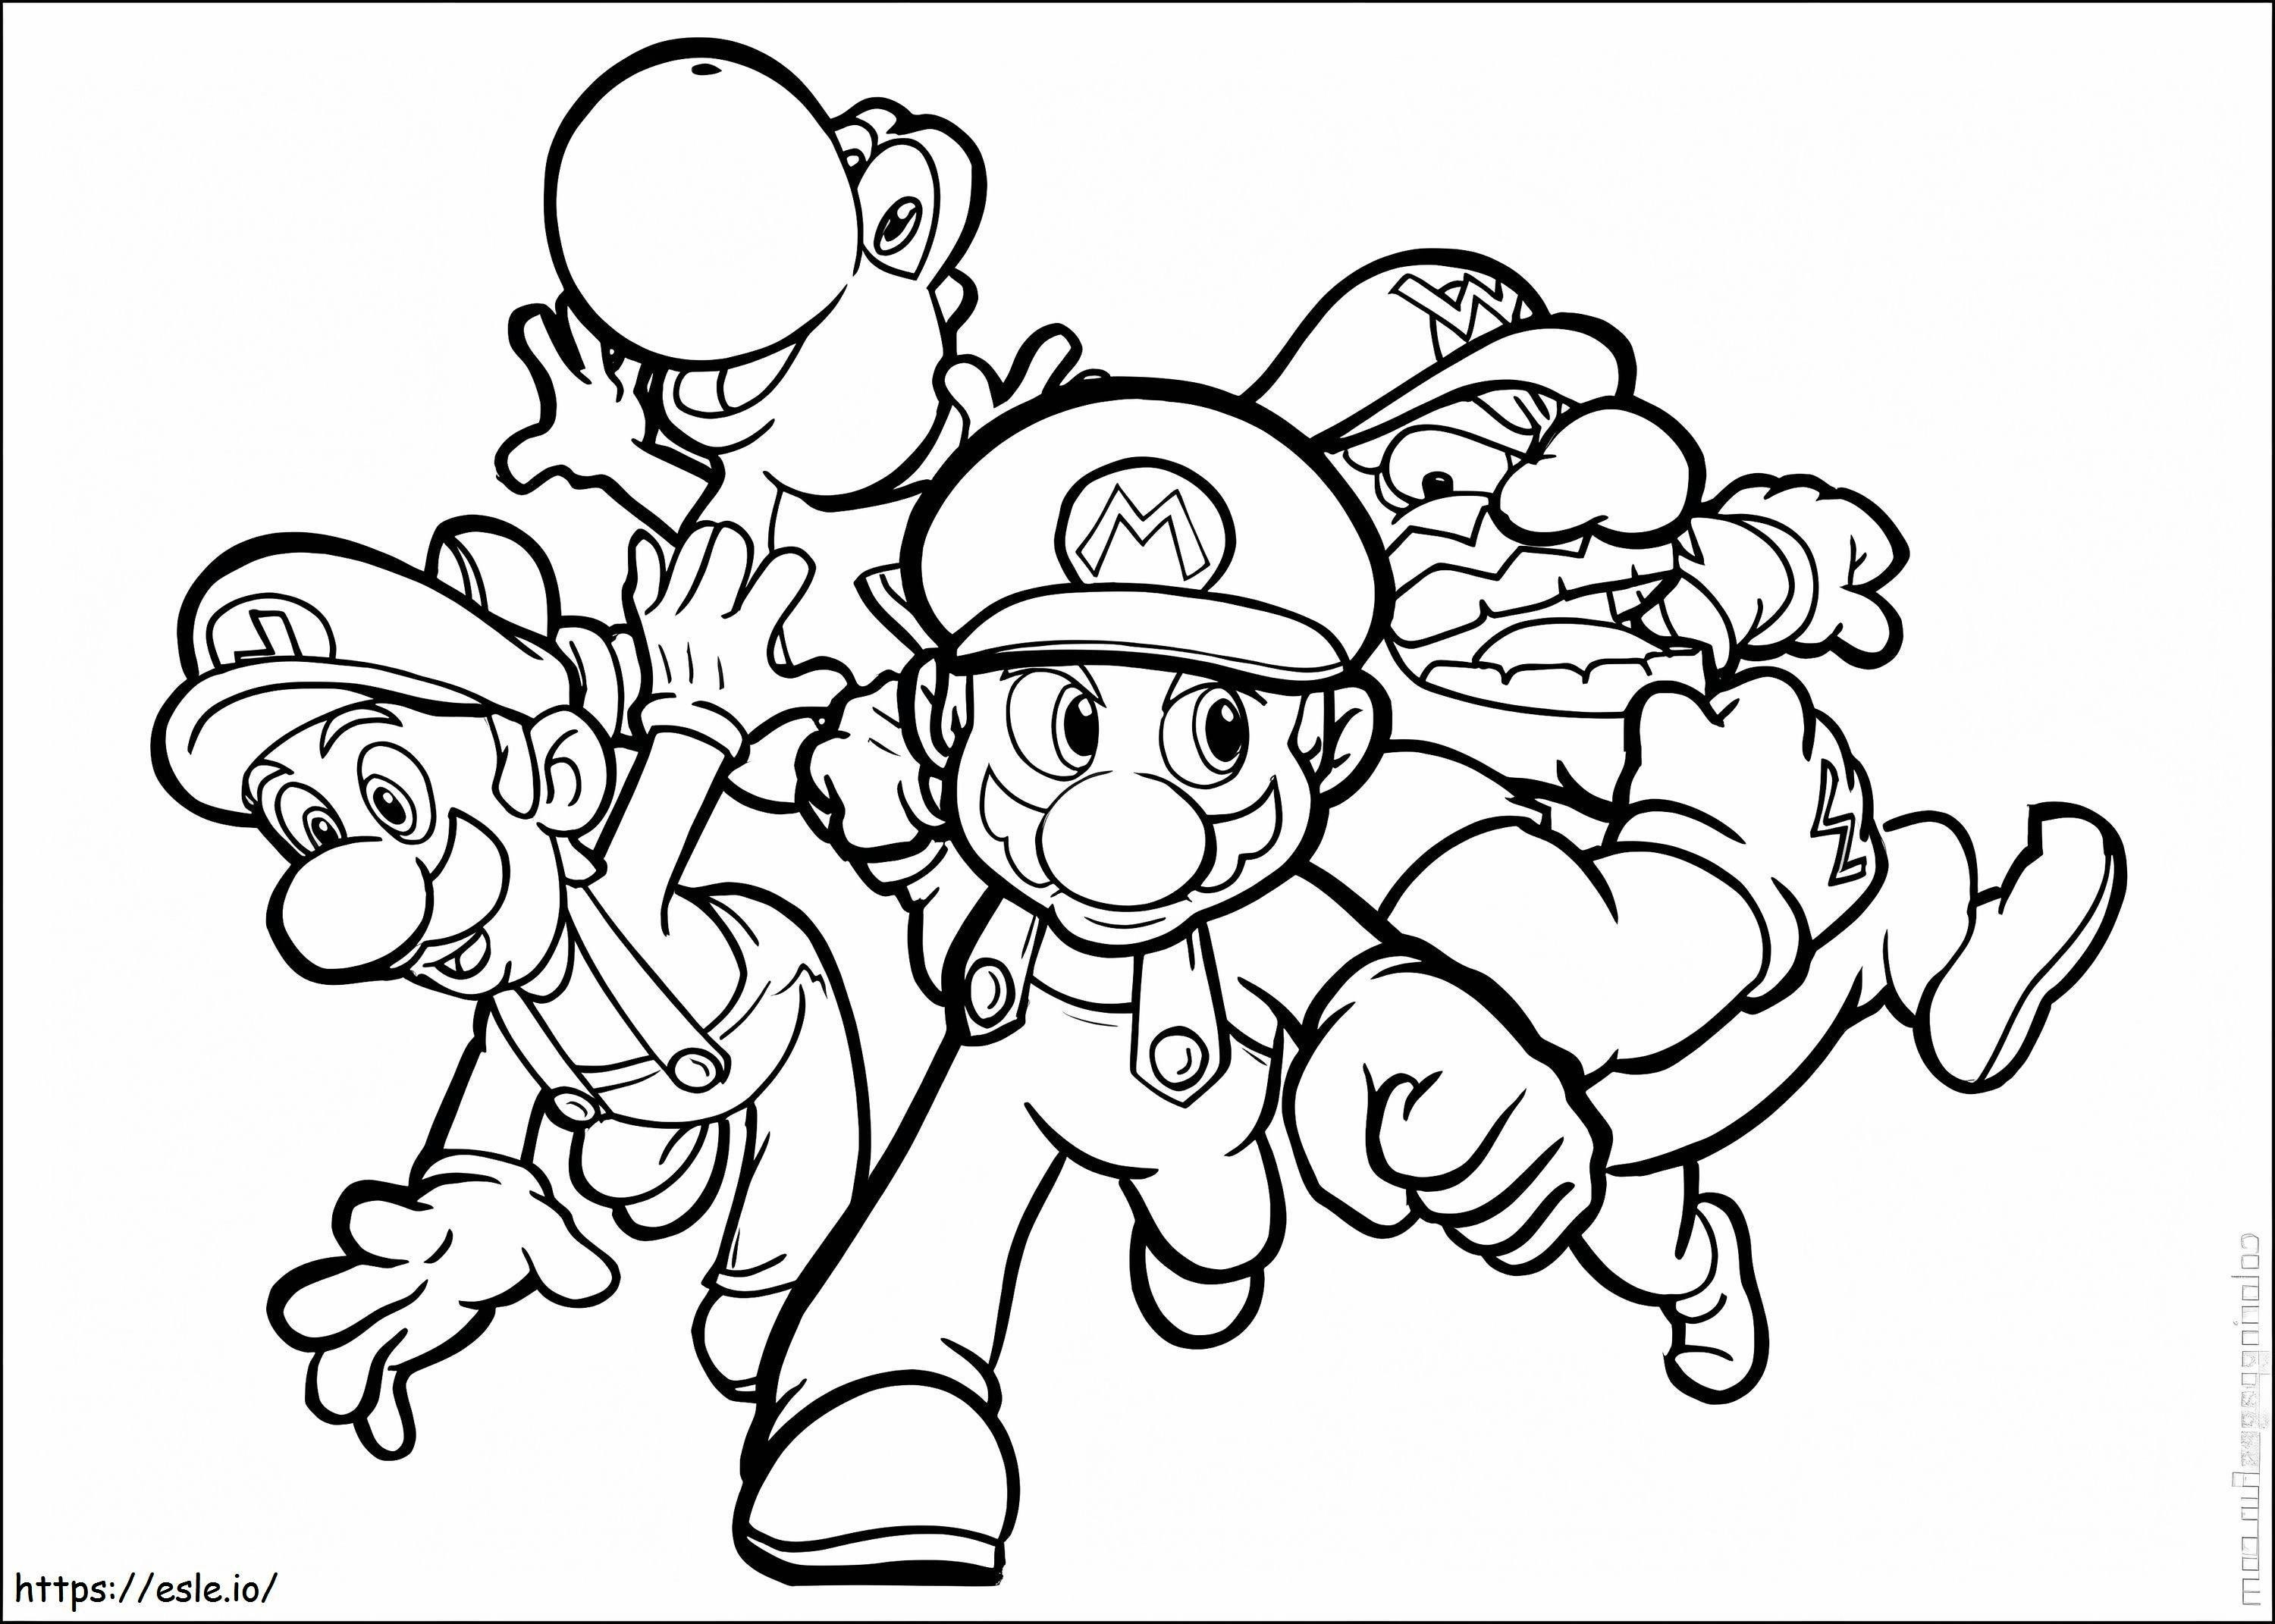 Coloriage Luigi et ses amis en cours d'exécution à imprimer dessin